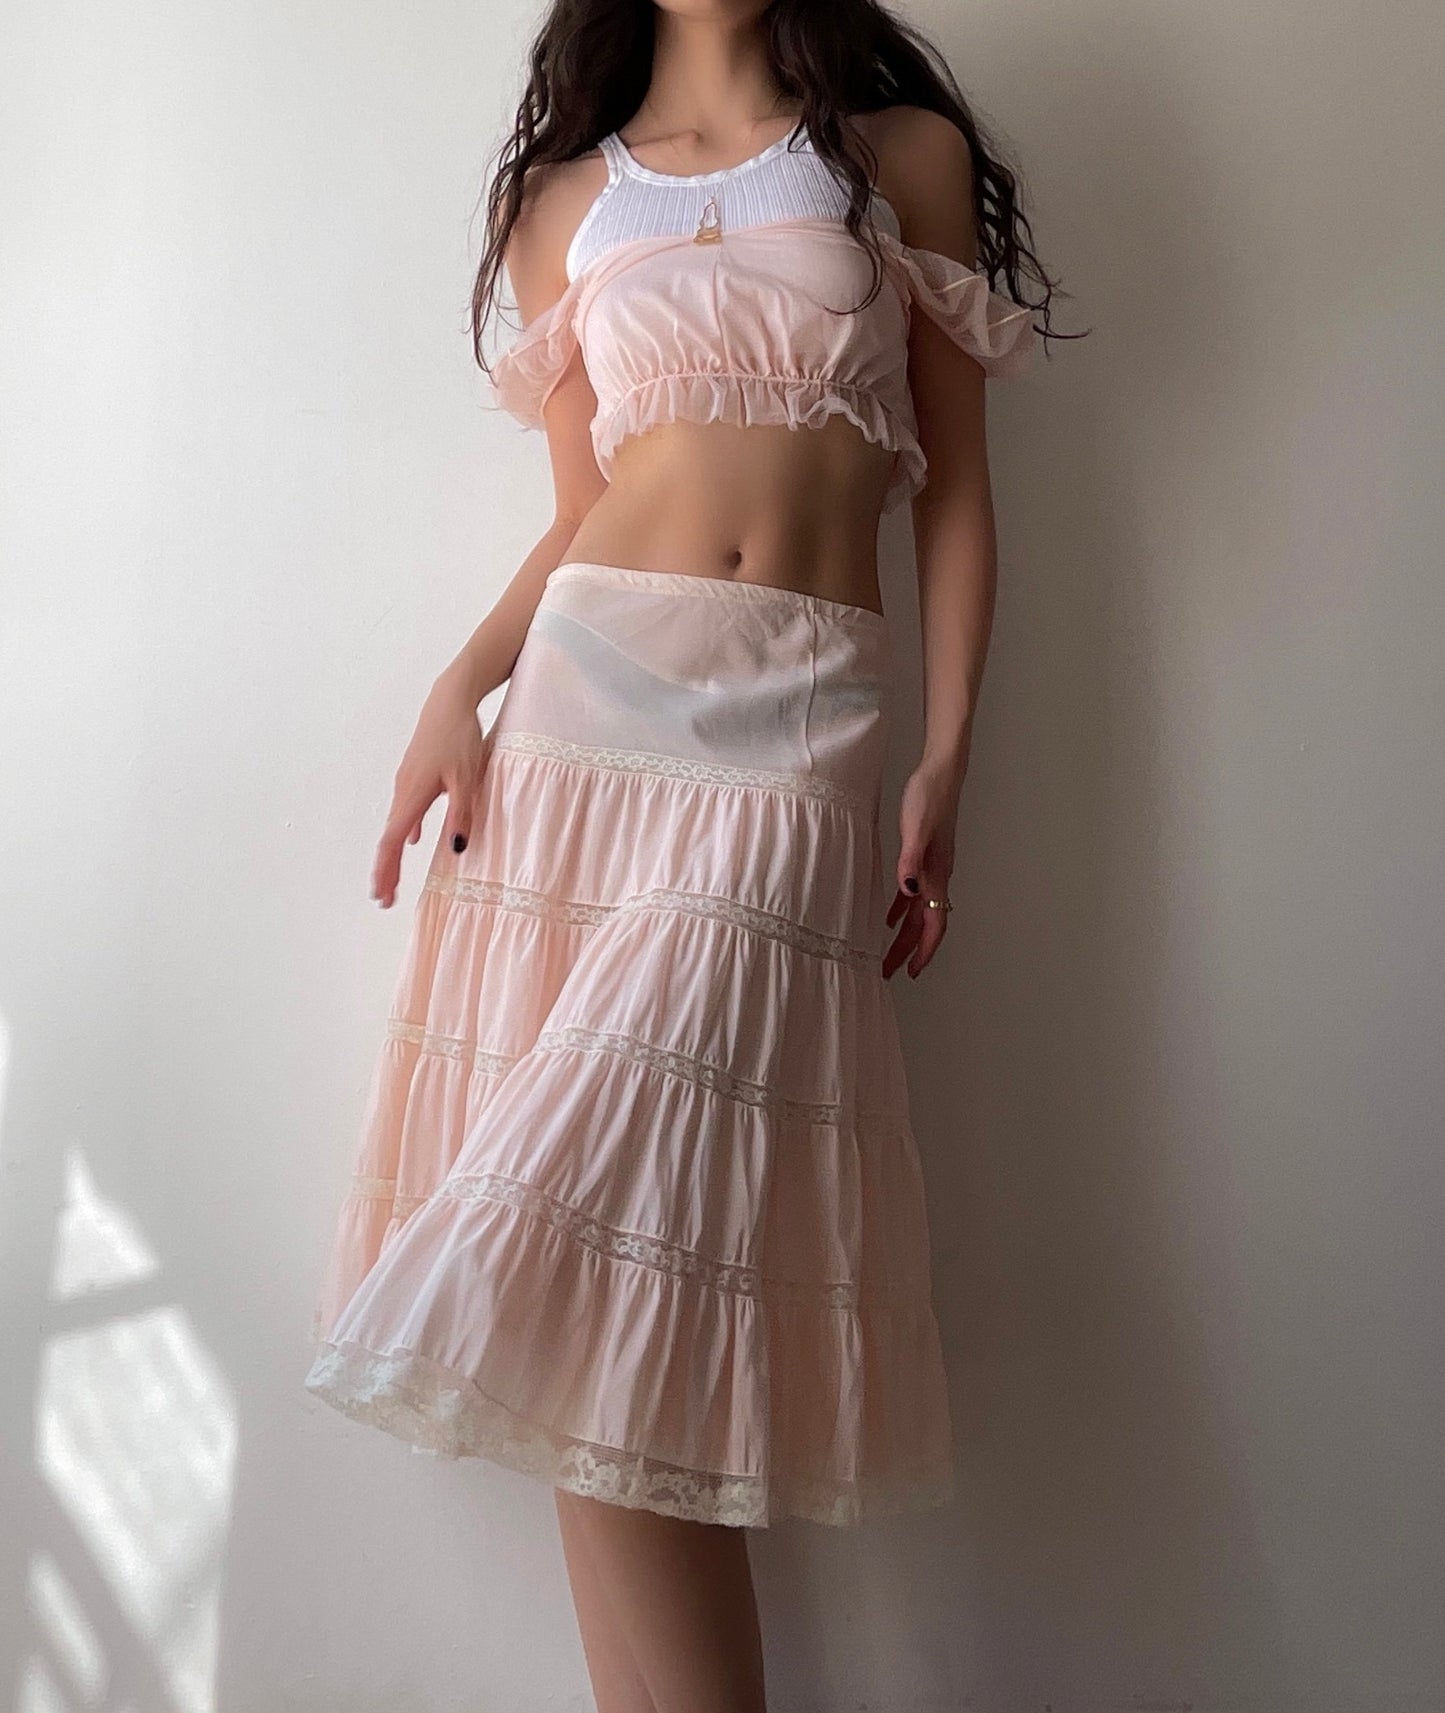 Strawberry Cream Skirt (33")